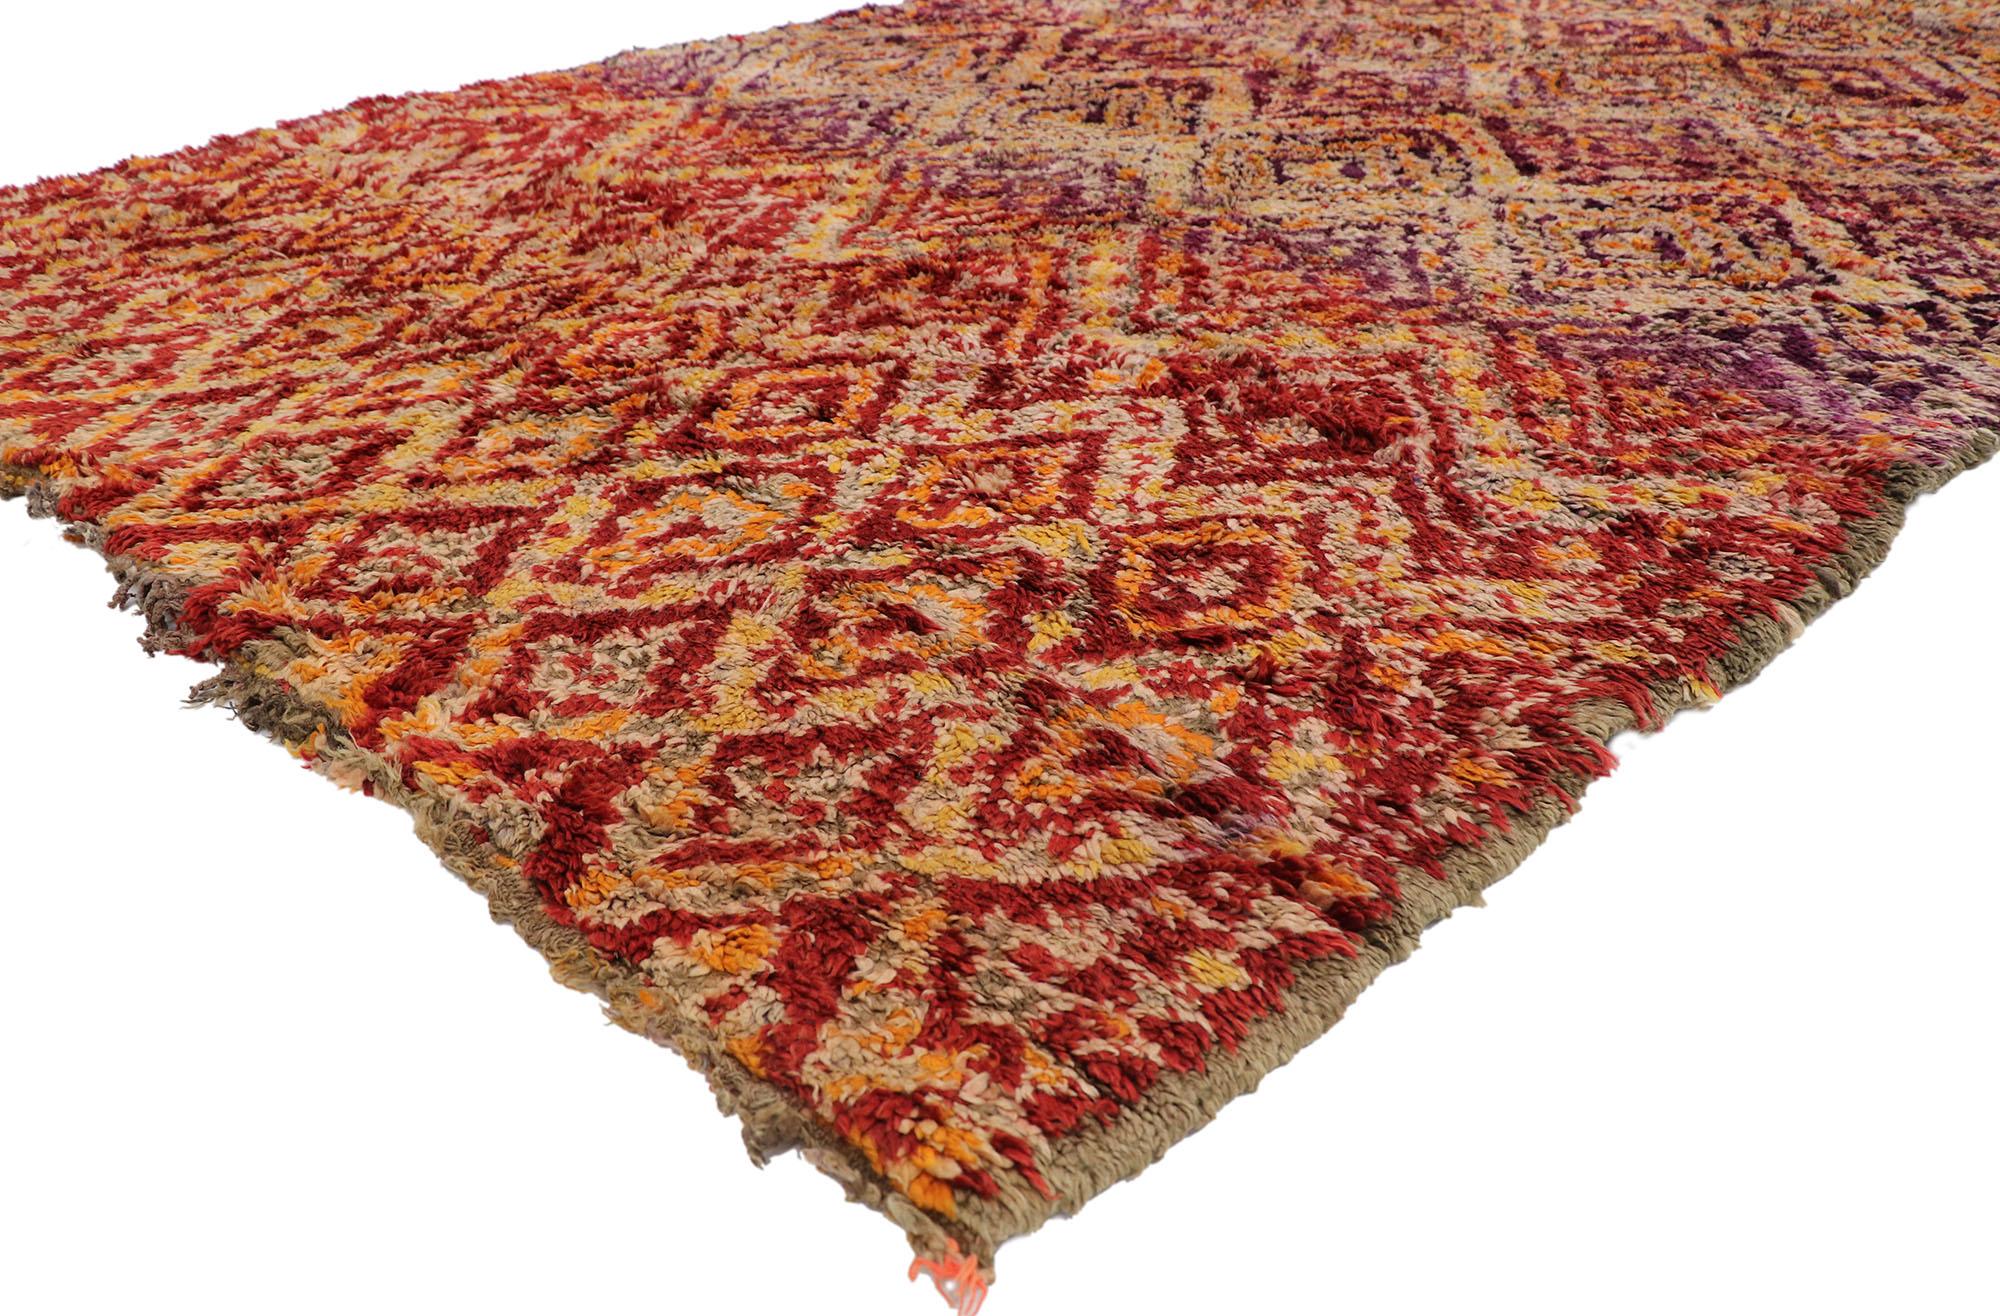 21201 Vintage Berber Beni M'Guild marokkanischen Teppich mit Mid-Century Modern Tribal Stil 06'10 x 12'02. Dieser handgeknüpfte marokkanische Berberteppich Beni M'Guild aus Wolle, gesättigt mit gutem Geschmack und reichem Abrasch, ist eine fesselnde